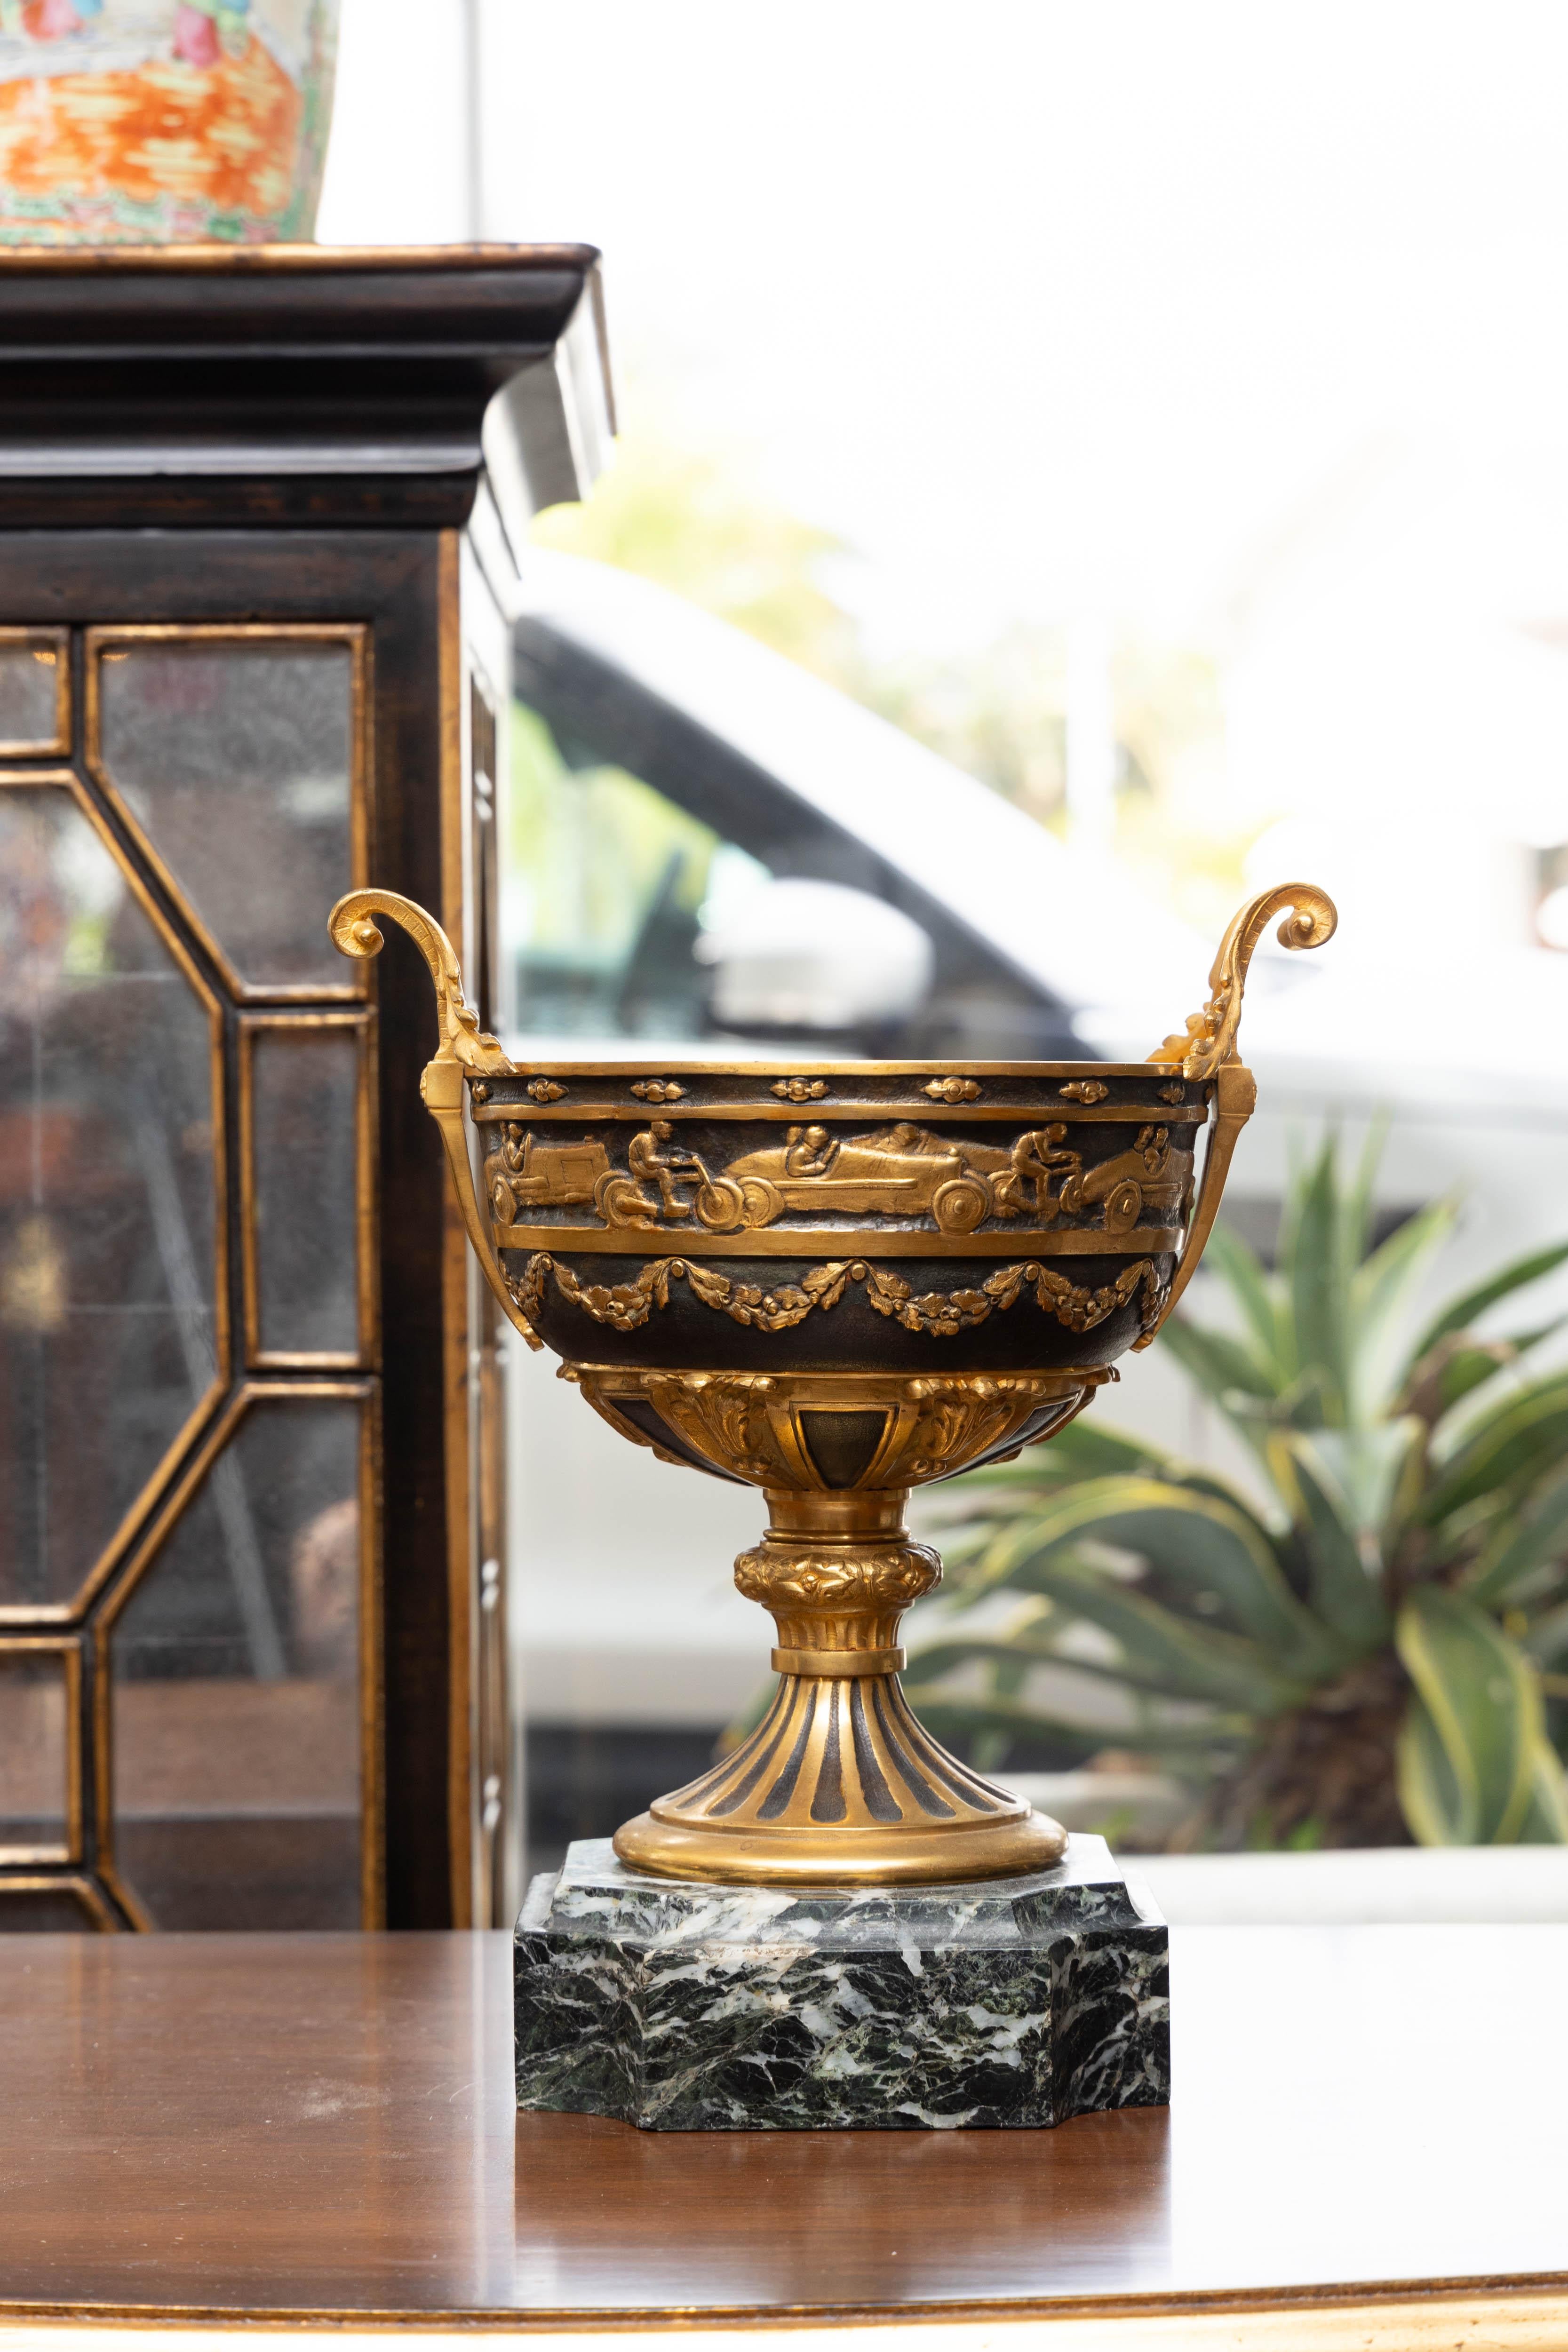 Il s'agit d'une urne de style calice en bronze patiné et doré, d'allure majestueuse, posée sur un socle en marbre de Verdi.  Il s'agit probablement d'une coupe trophée, avec des représentations d'une variété de voitures de course et de motocyclettes